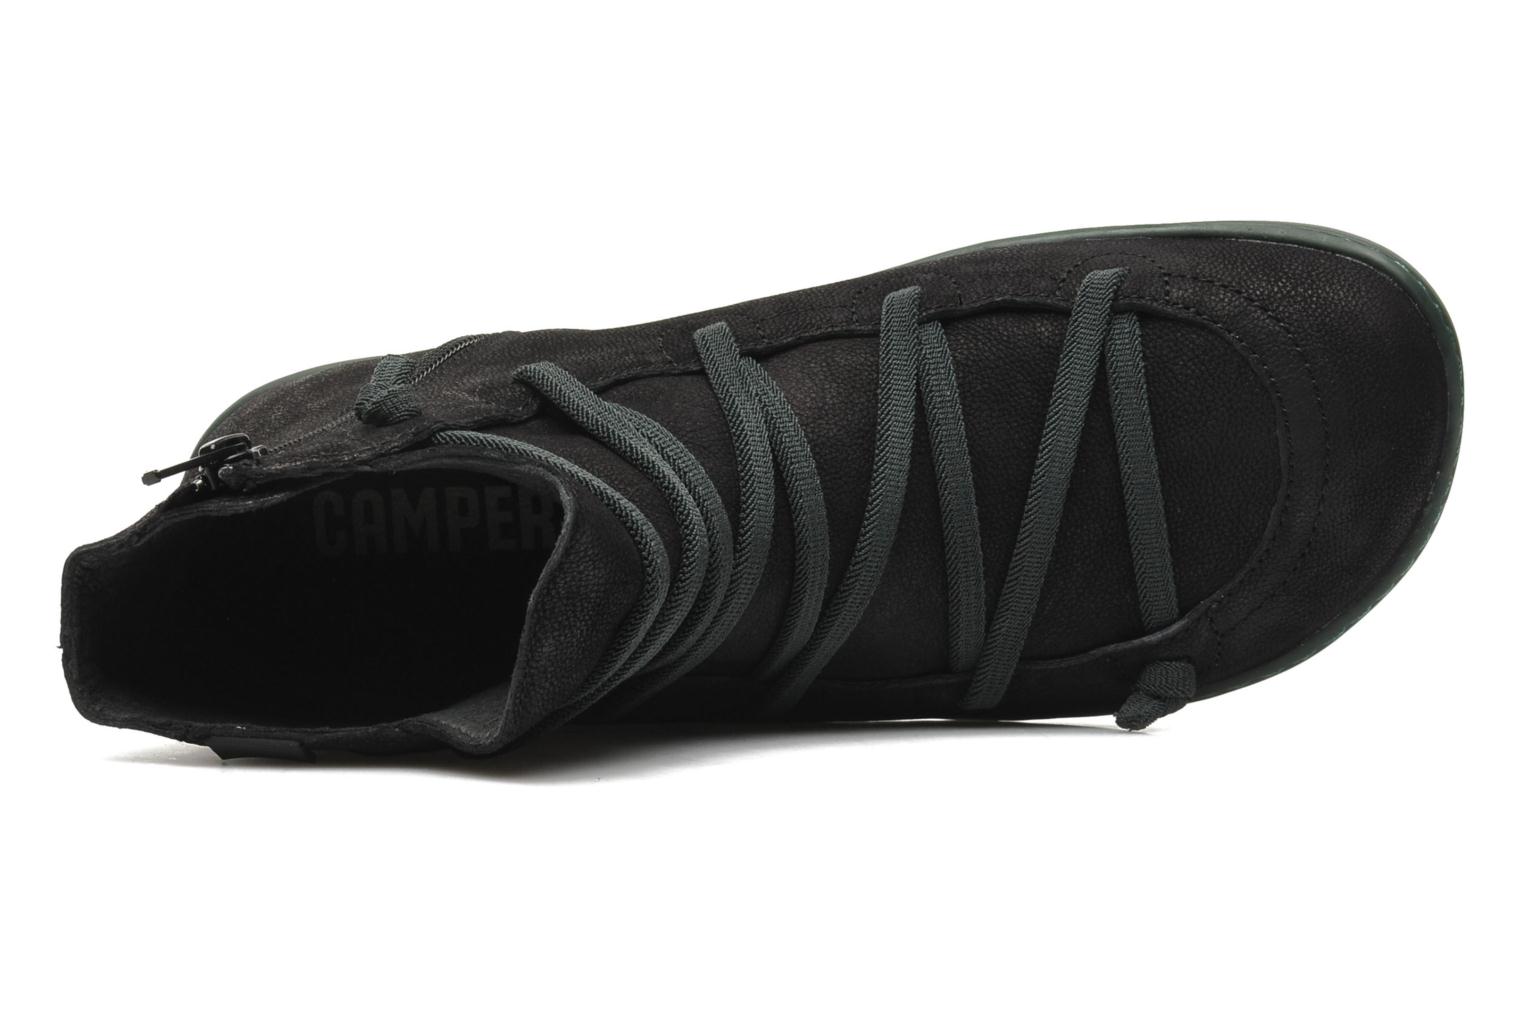 Camper Peu Cami 46104 (Black) - Ankle boots chez Sarenza (192274)